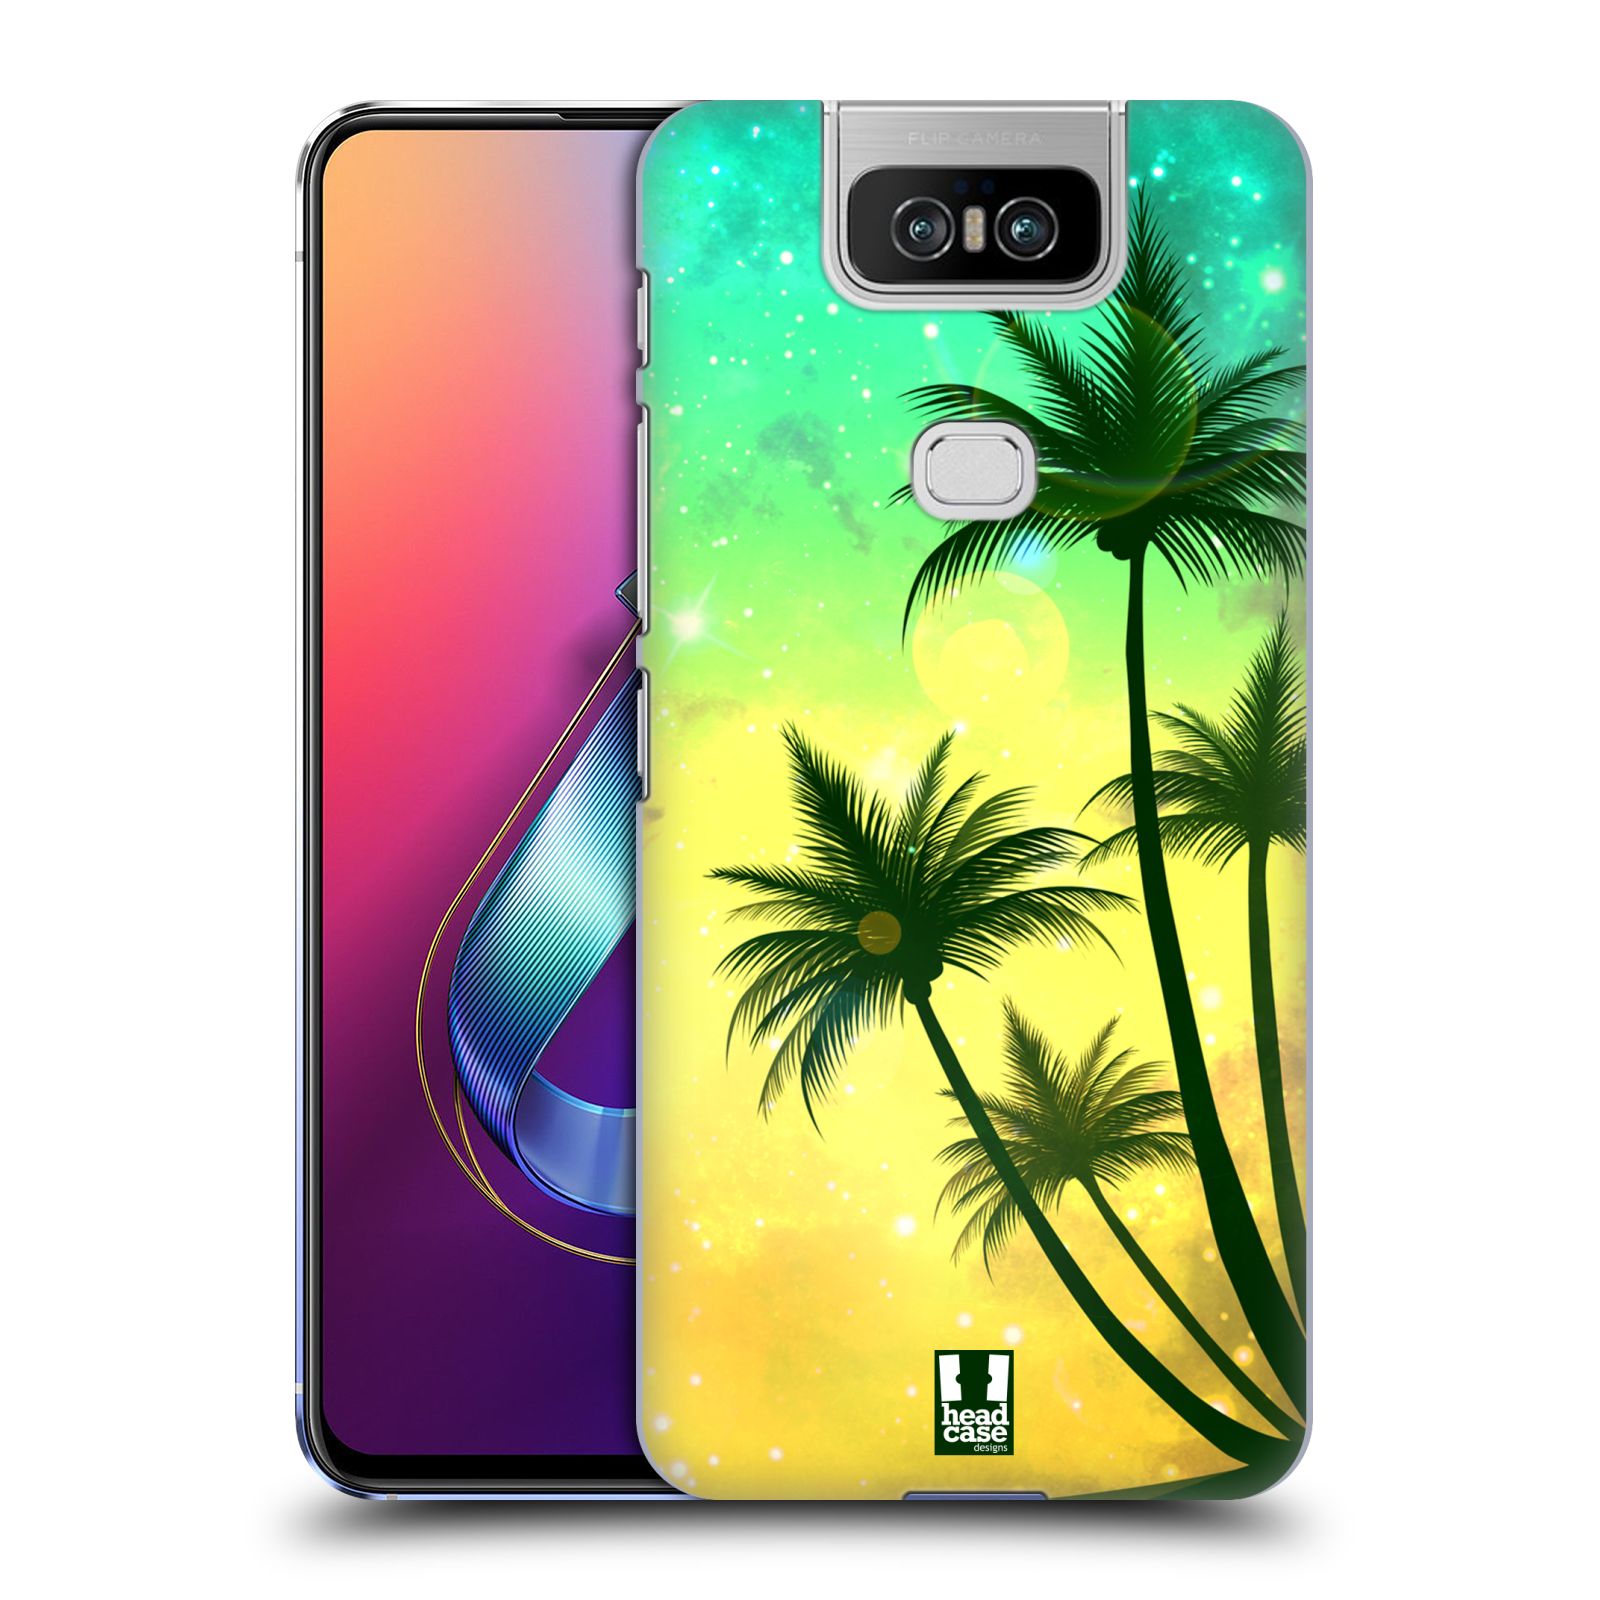 Pouzdro na mobil Asus Zenfone 6 ZS630KL - HEAD CASE - vzor Kreslený motiv silueta moře a palmy TYRKYSOVÁ